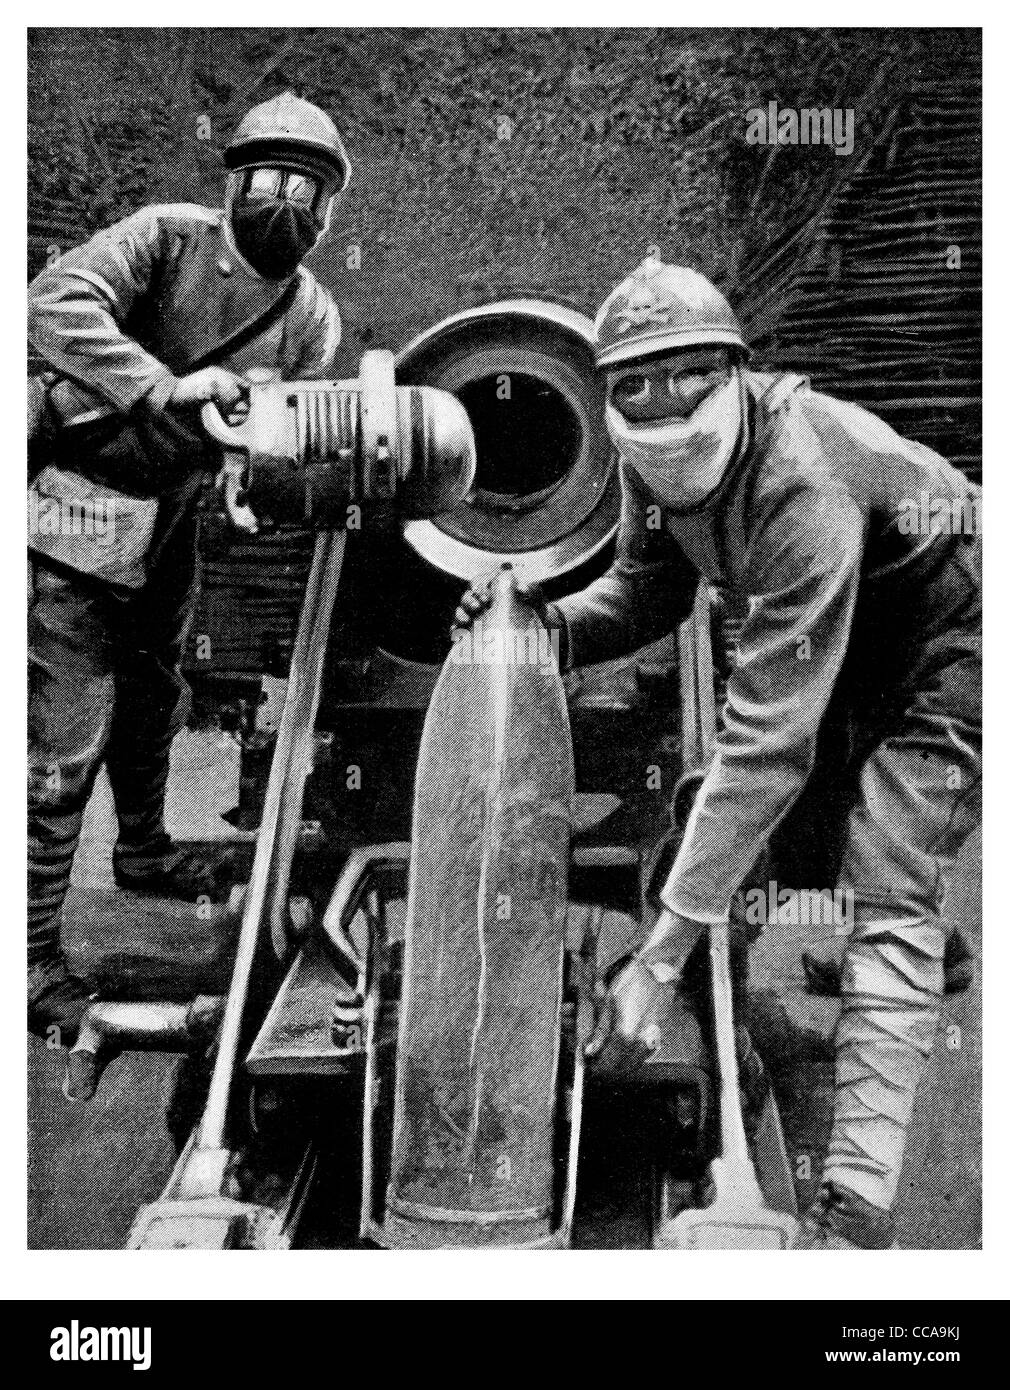 Shell obusier chargement colossal attaque au gaz de l'artillerie lourde monster gunner soldats français masques masque 1916 fumées toxiques Banque D'Images